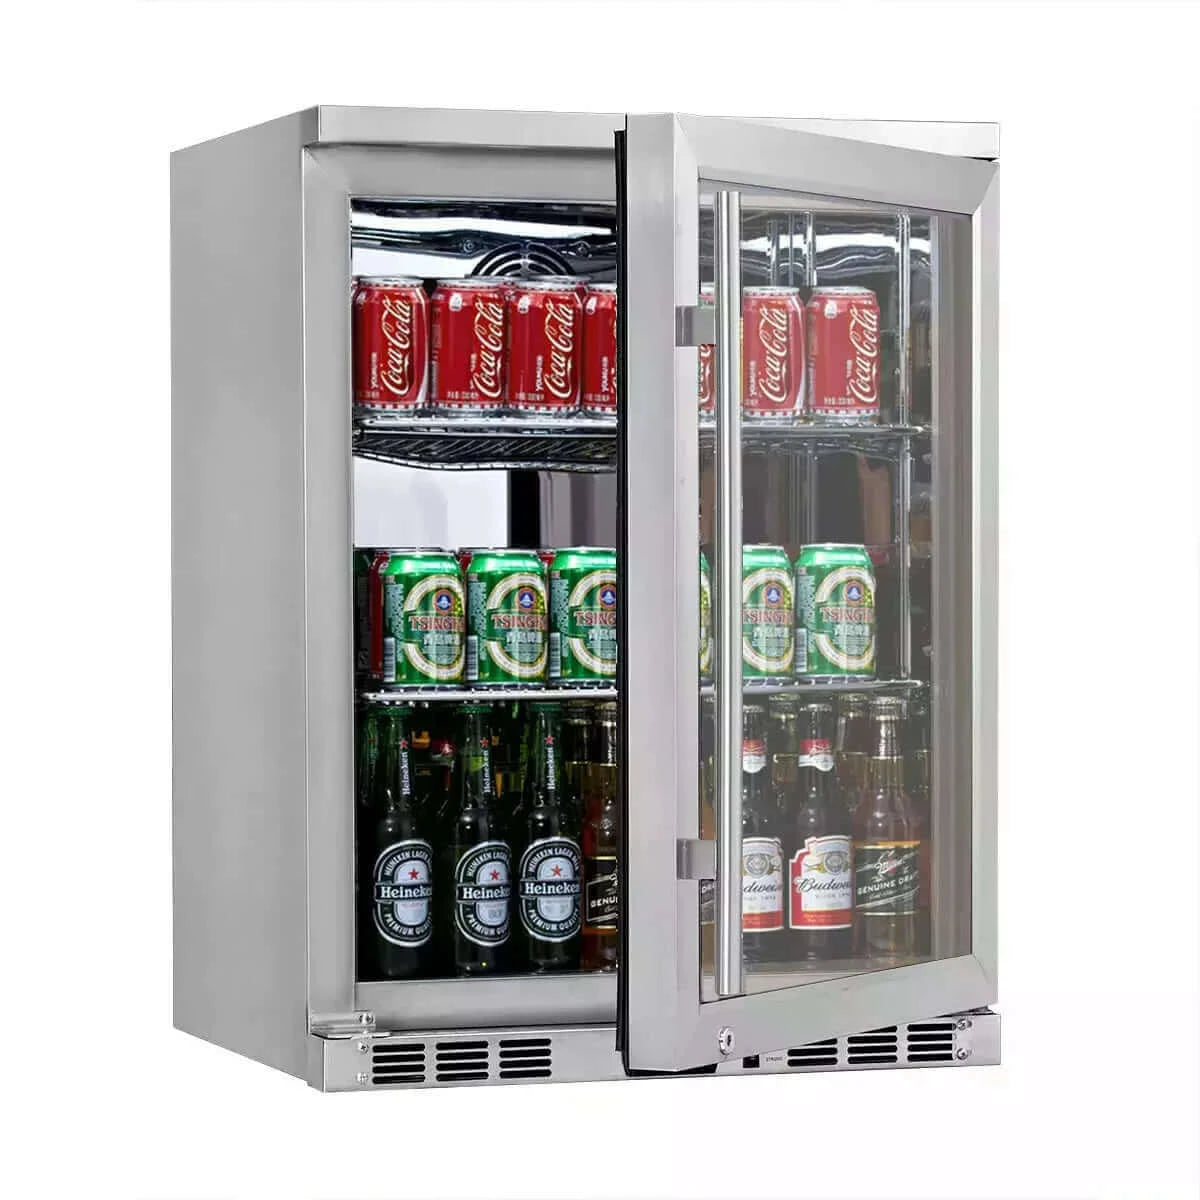 KingsBottle 24" Under Counter Beer Cooler Drinks Stainless Steel